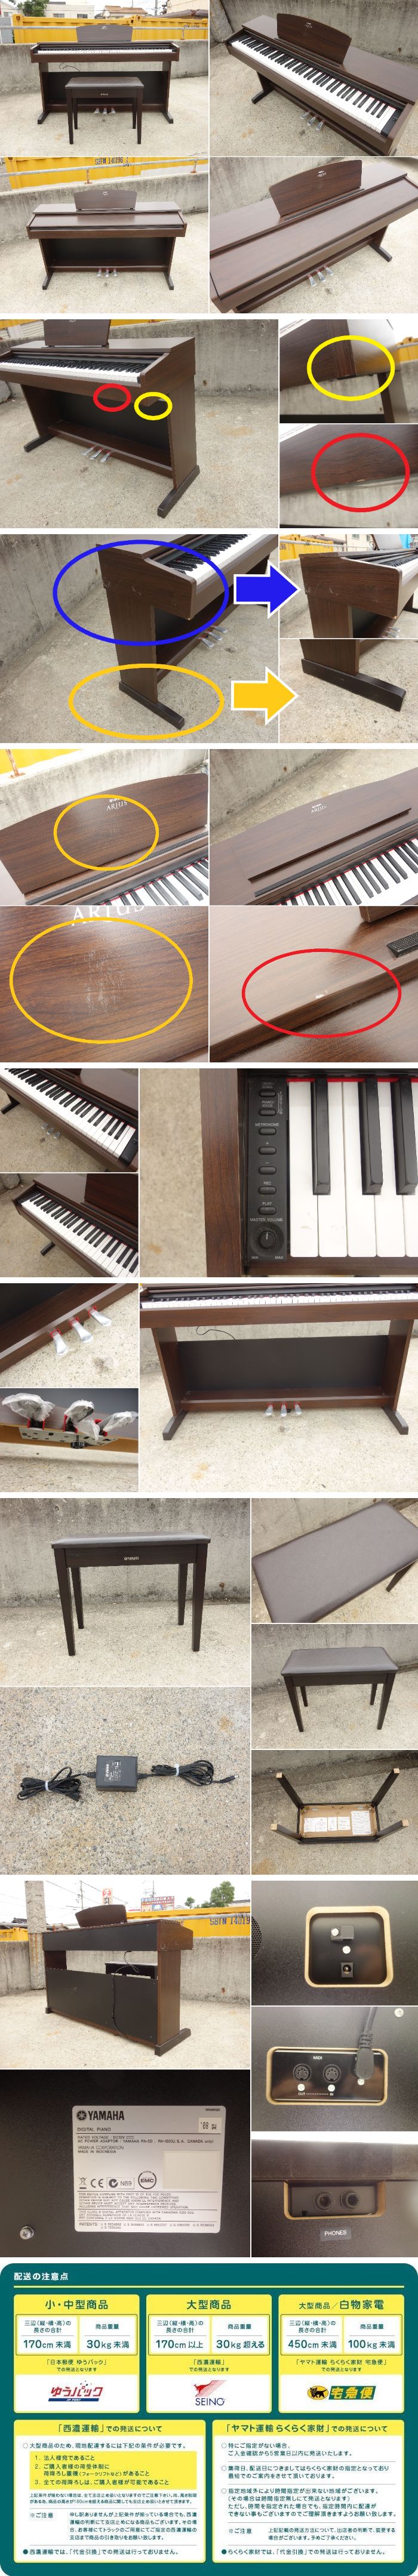 最速出荷D▼ヤマハ デジタルピアノ 電子ピアノ キーボード アリウス ARIUS 88鍵盤 椅子 ダークアルダー調 YDP-140 (30729) ヤマハ